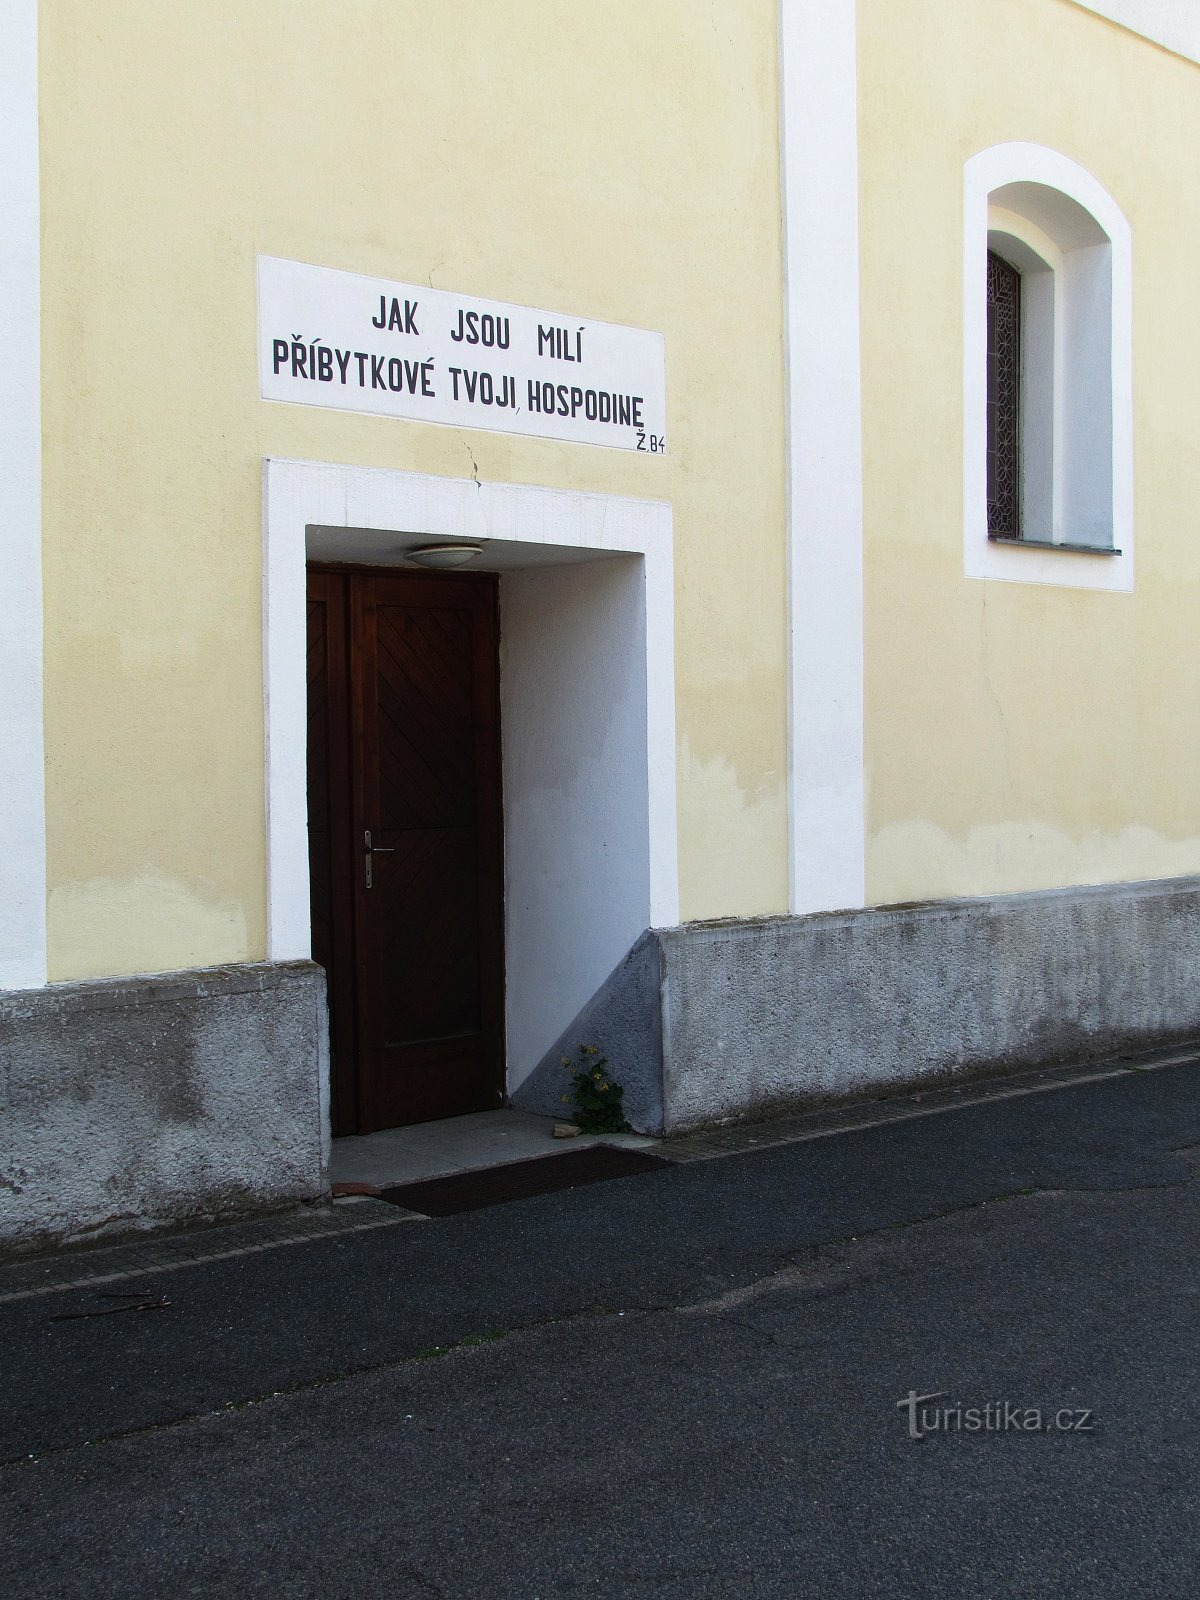 Javorník - evangelička crkva